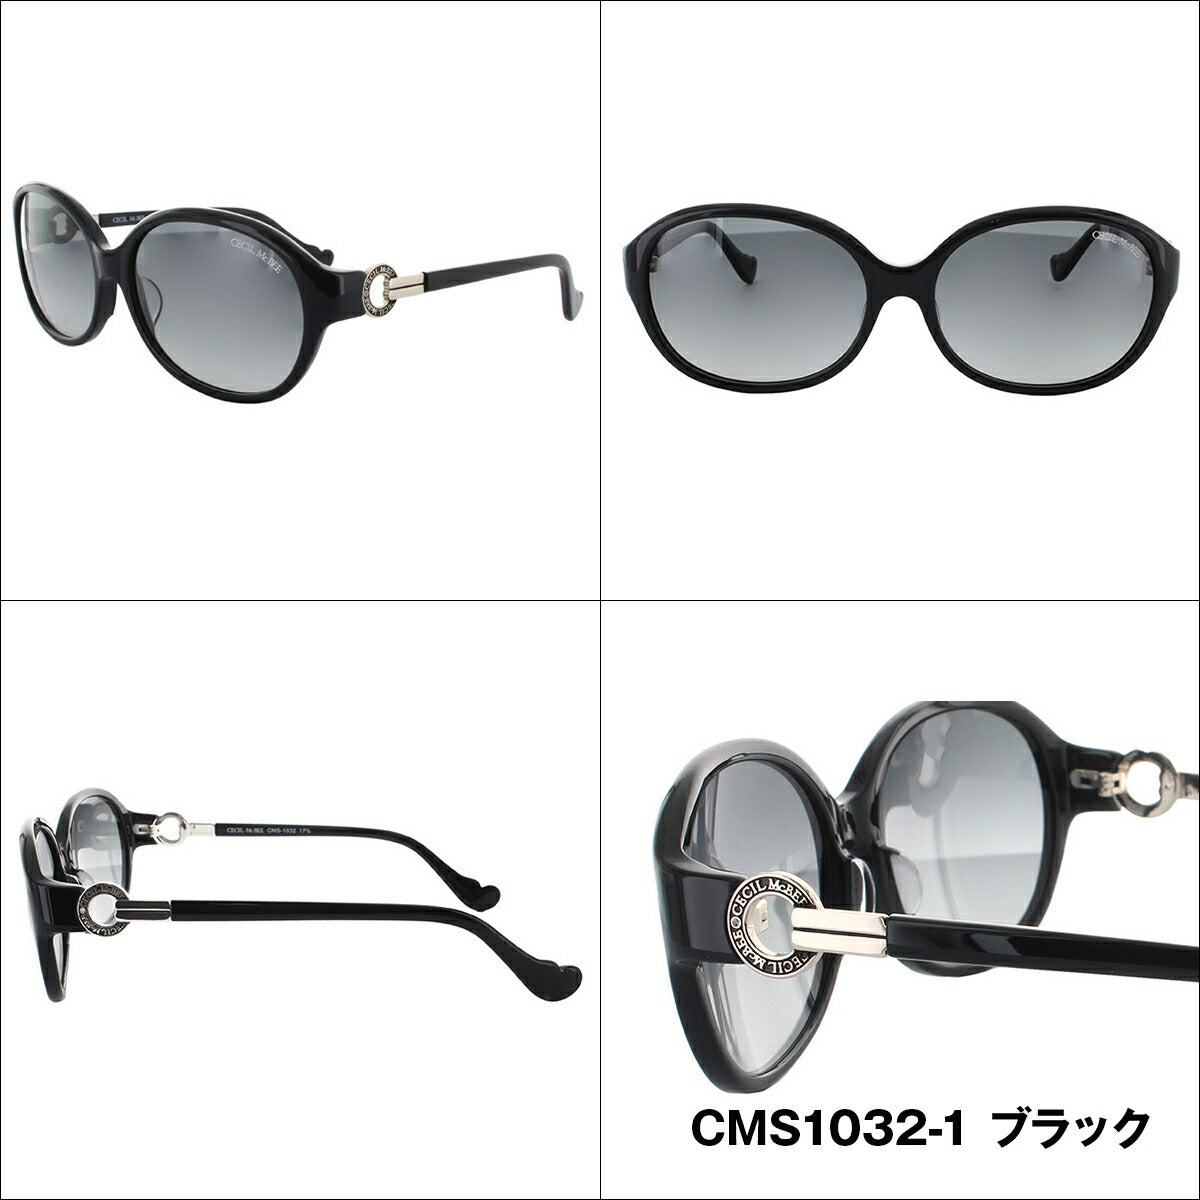 レディース サングラス CECIL McBEE セシルマクビー CMS 1032 全3色 59サイズ アジアンフィット 女性 UVカット 紫外線 対策 ブランド 眼鏡 メガネ アイウェア 人気 おすすめ ラッピング無料